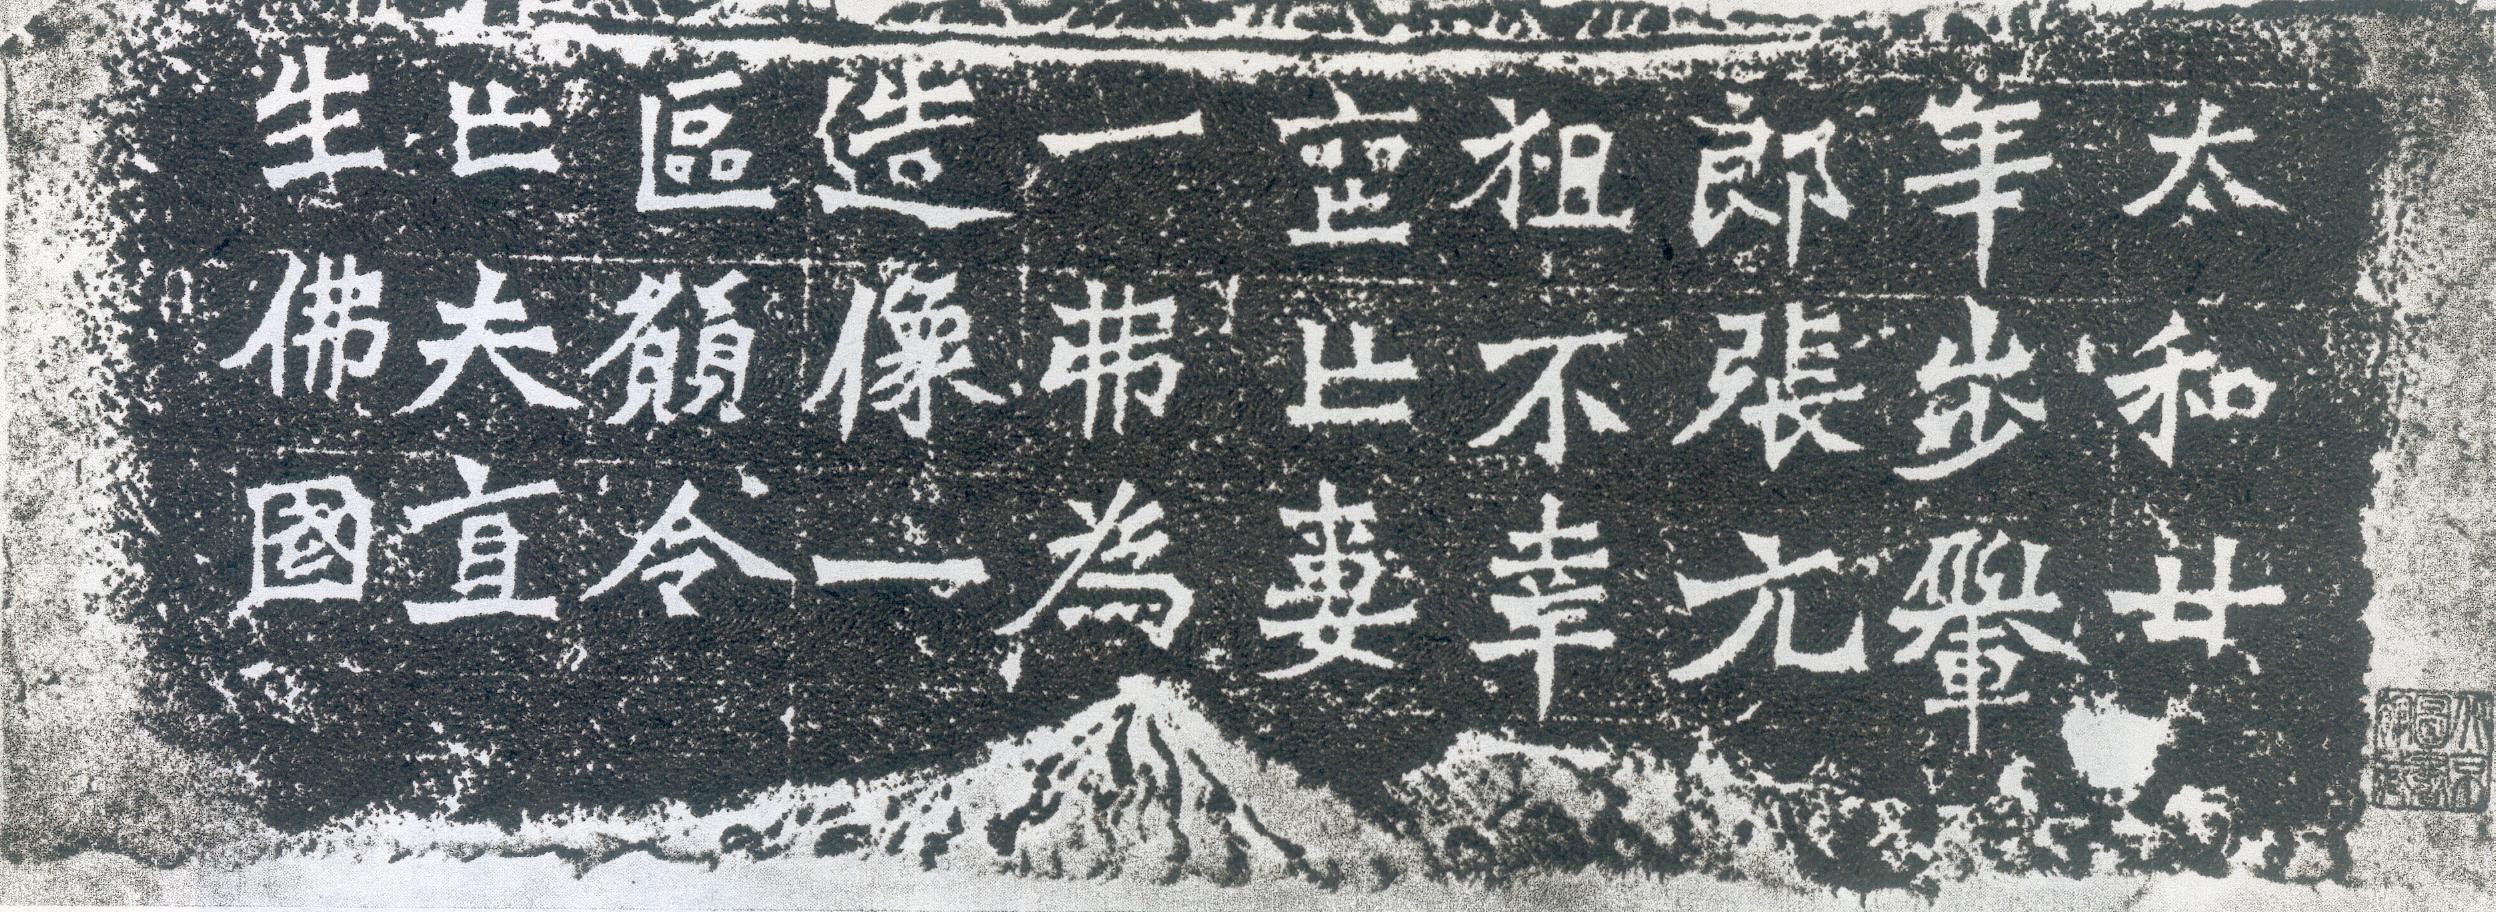 龙门二十品之《一弗为张元祖造像记》(图1)